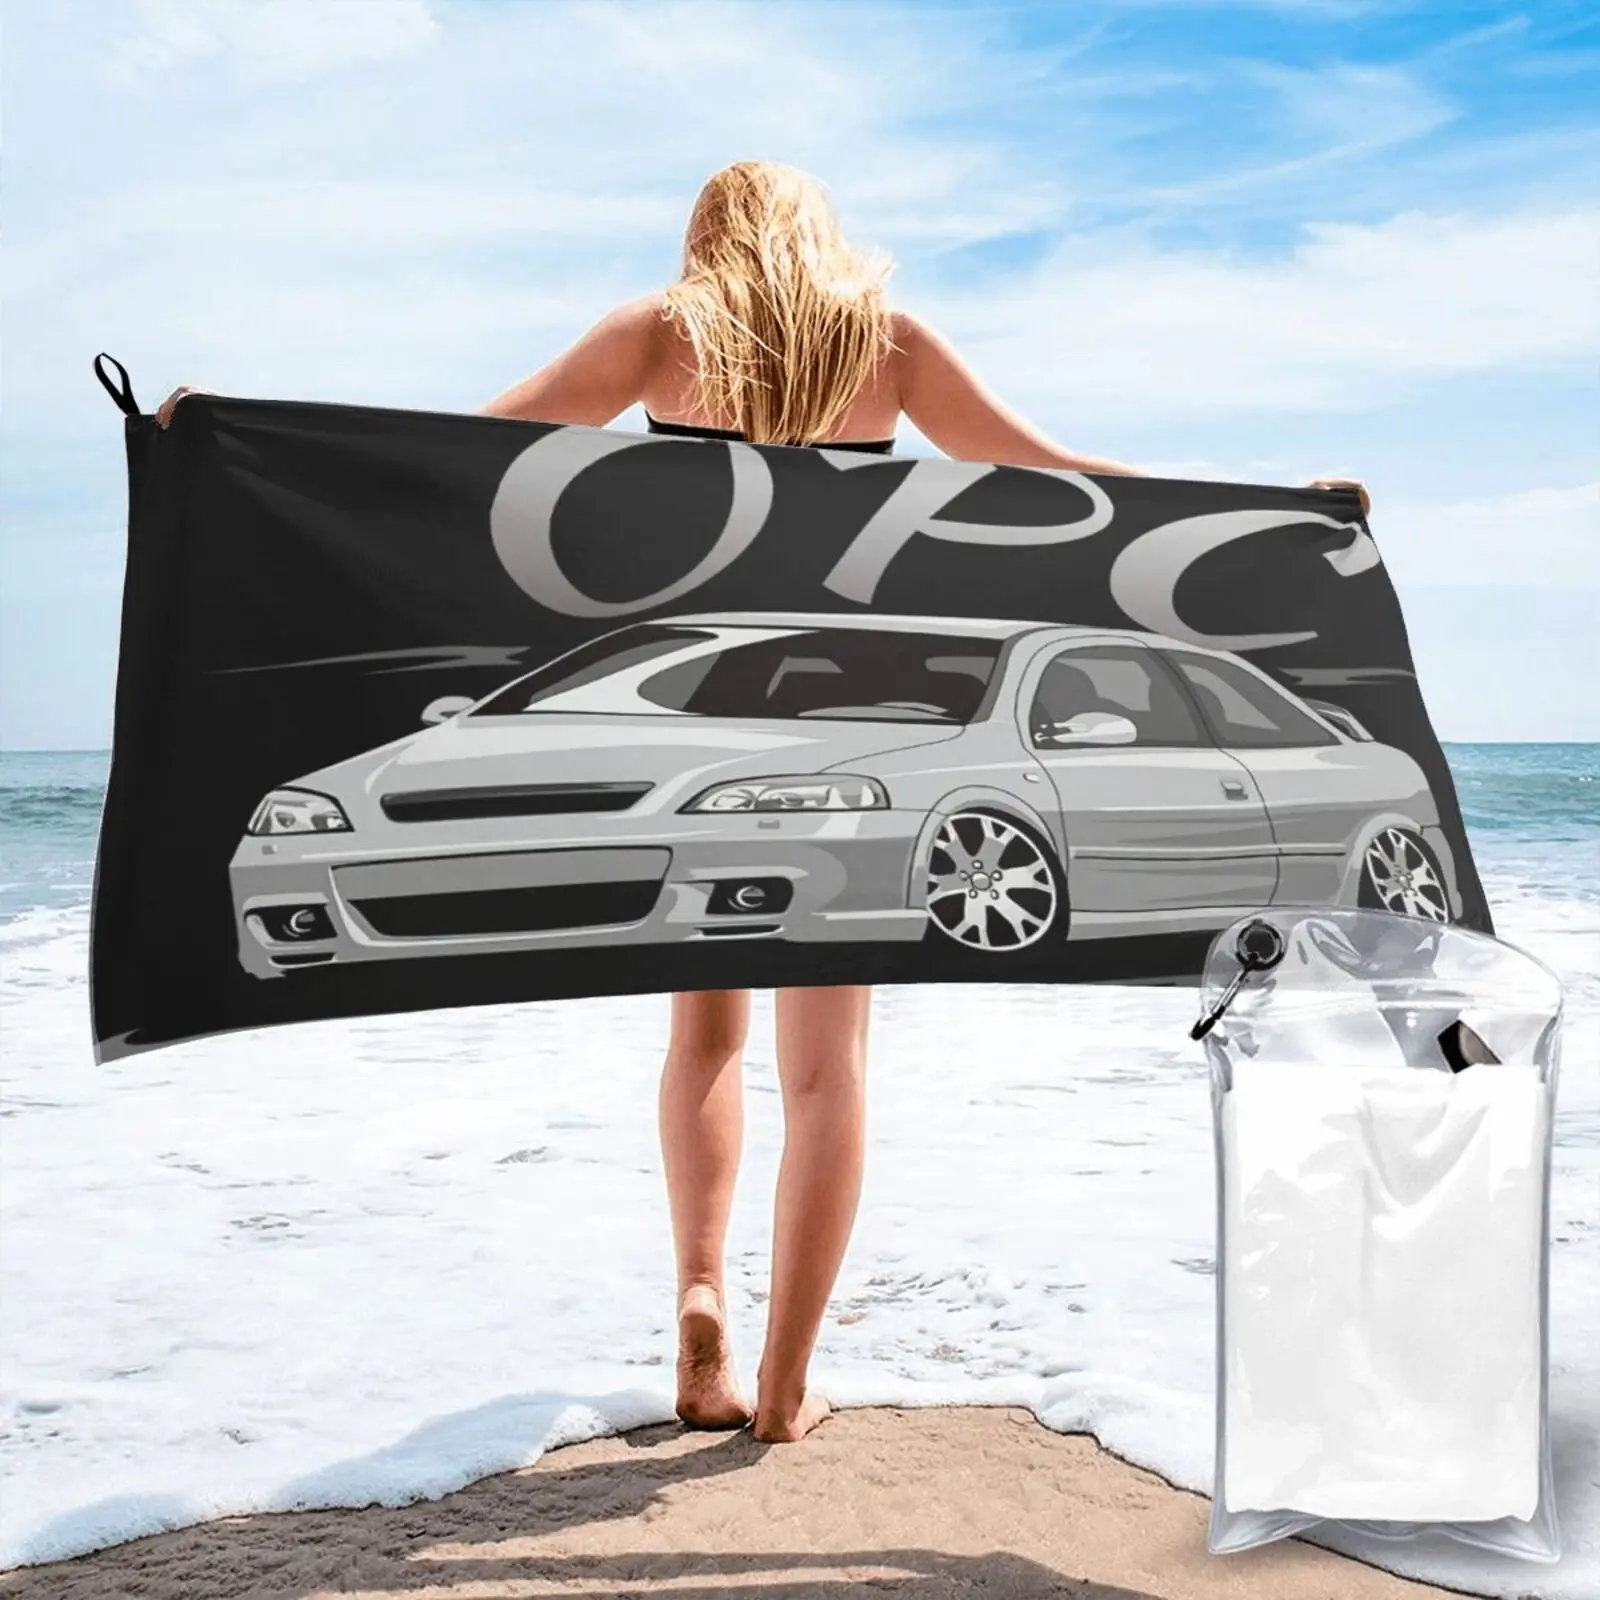 

Пляжное полотенце Opel Astra G Opc 1812, полотенце для лица, банный халат, женское детское полотенце, кухонное полотенце, пляжное полотенце, пляжное п...